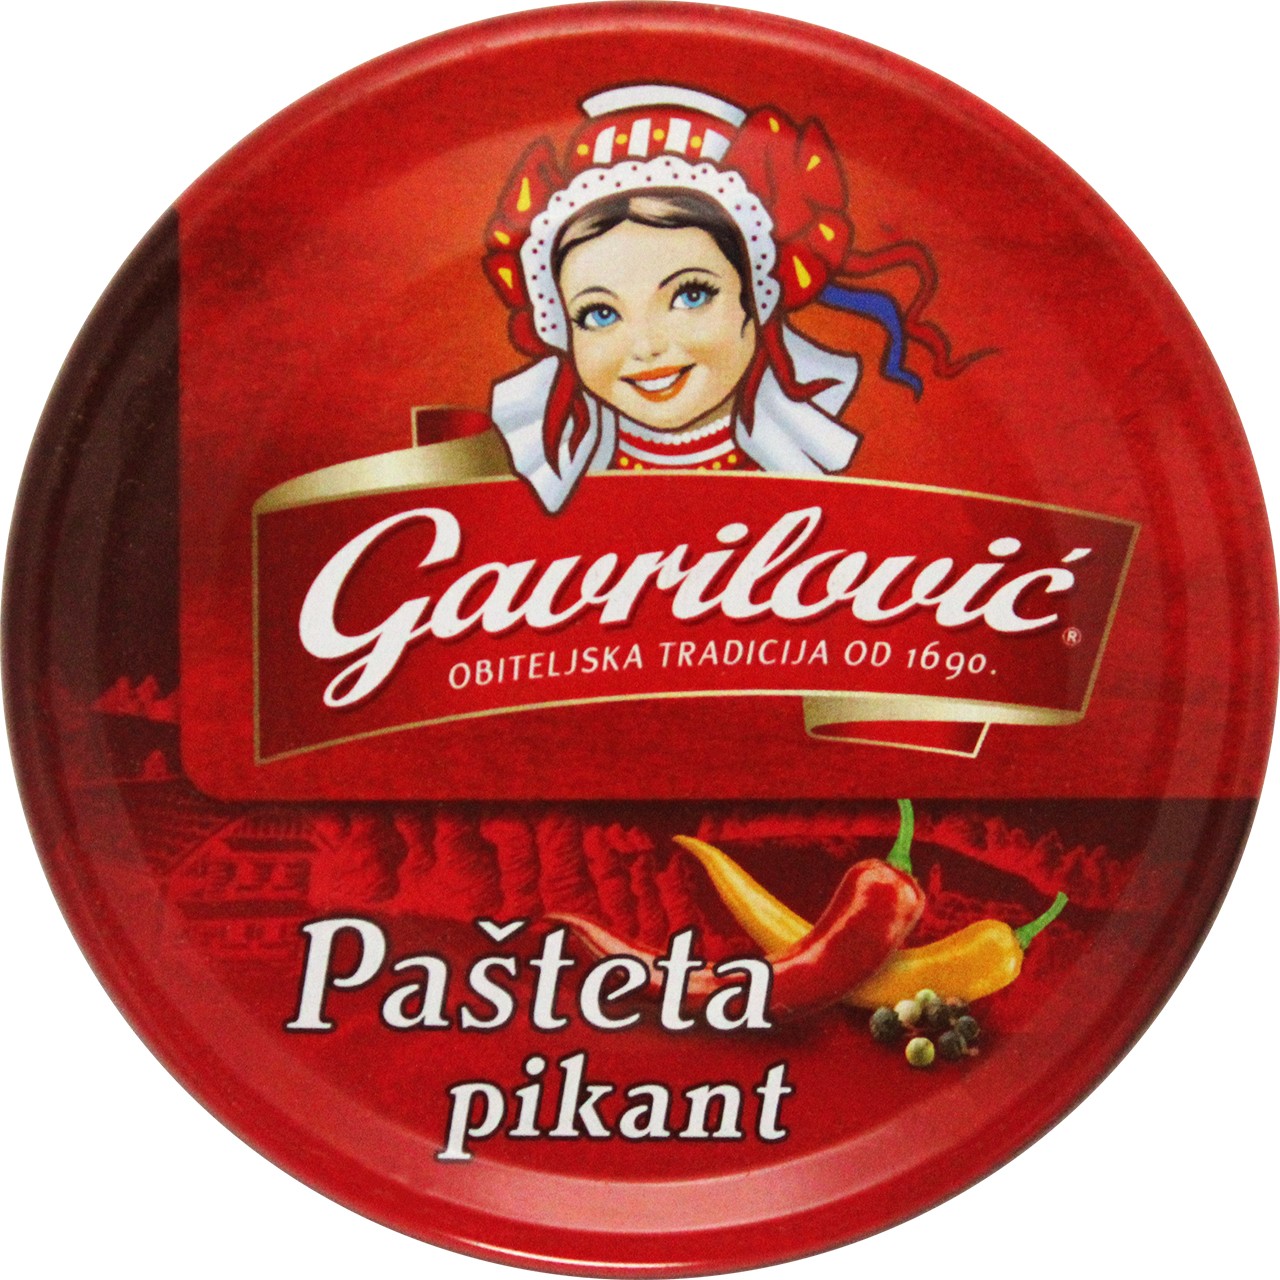 Schweinepastete Pikant - Pašteta pikant - Gavrilovic - Kroatien